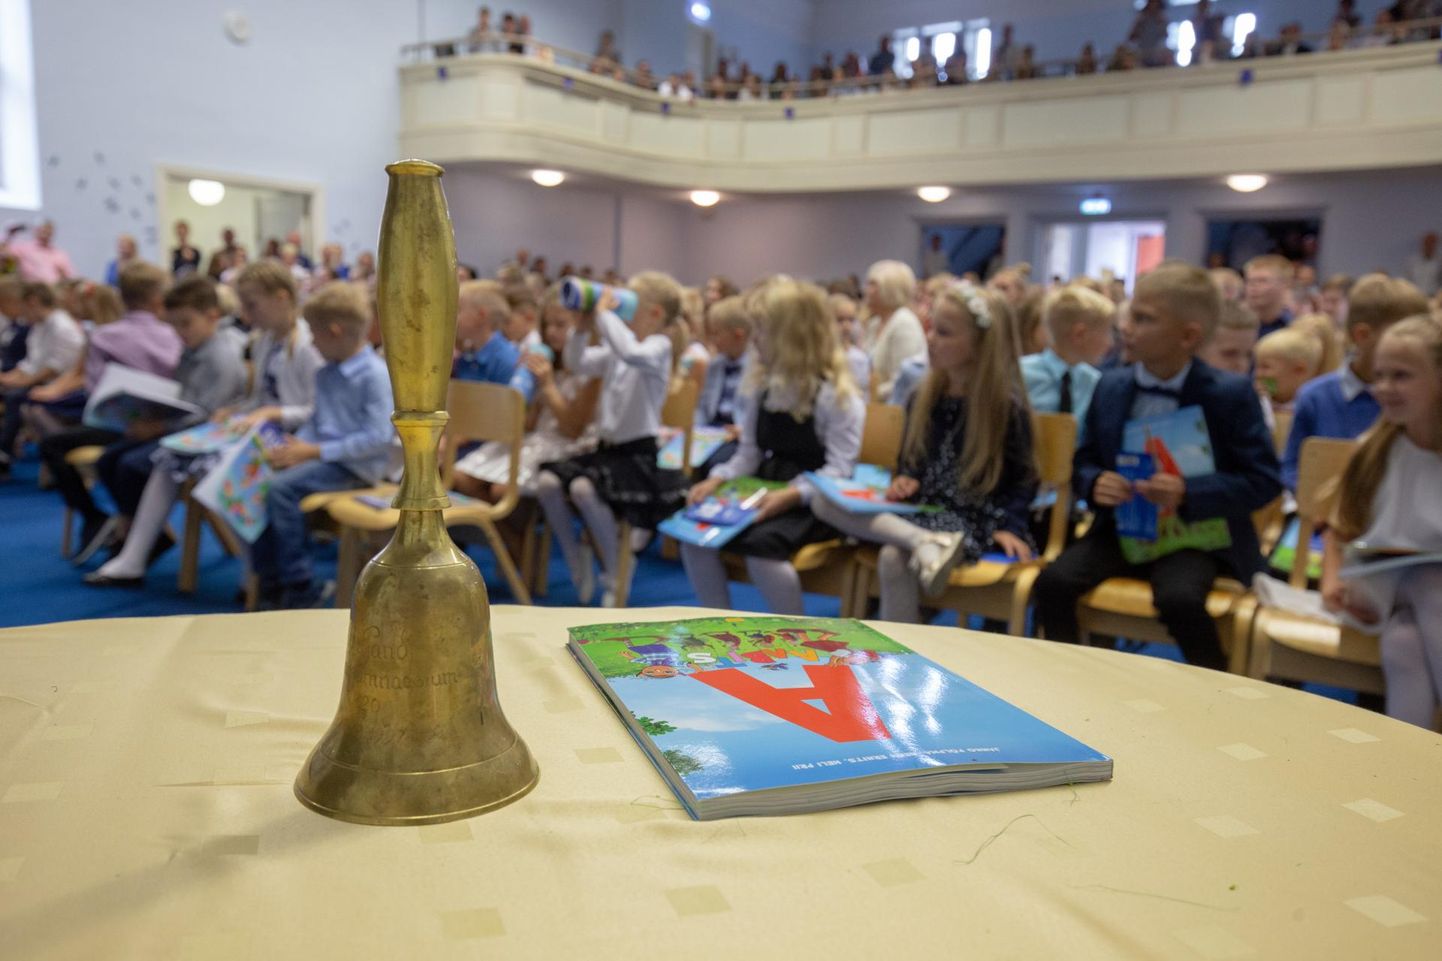 Presidendi hariduspreemia on mõeldud kuni 35-aastasele inimesele, kes on saavutanud Eesti hariduselus väljapaistvaid tulemusi, olgu siis õpetades, õppematerjale koostades või haridusuuendusi vedades.